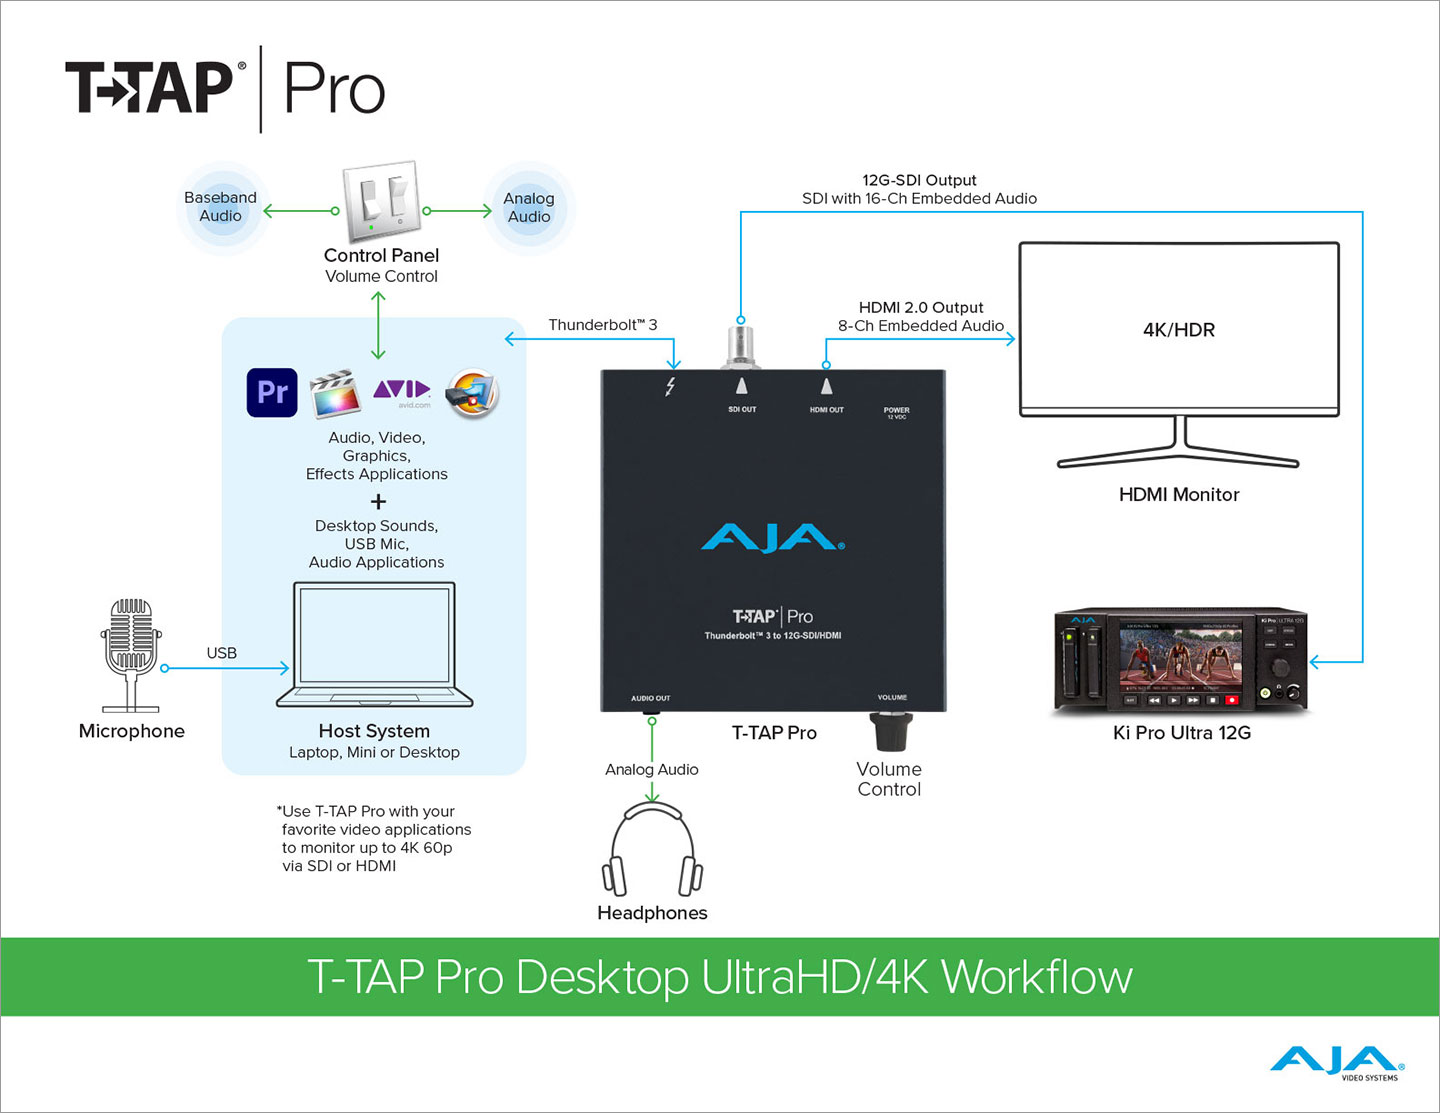 5081 AJA TTAP Pro Workflow Diagrams 01272021 FIN 01 sm